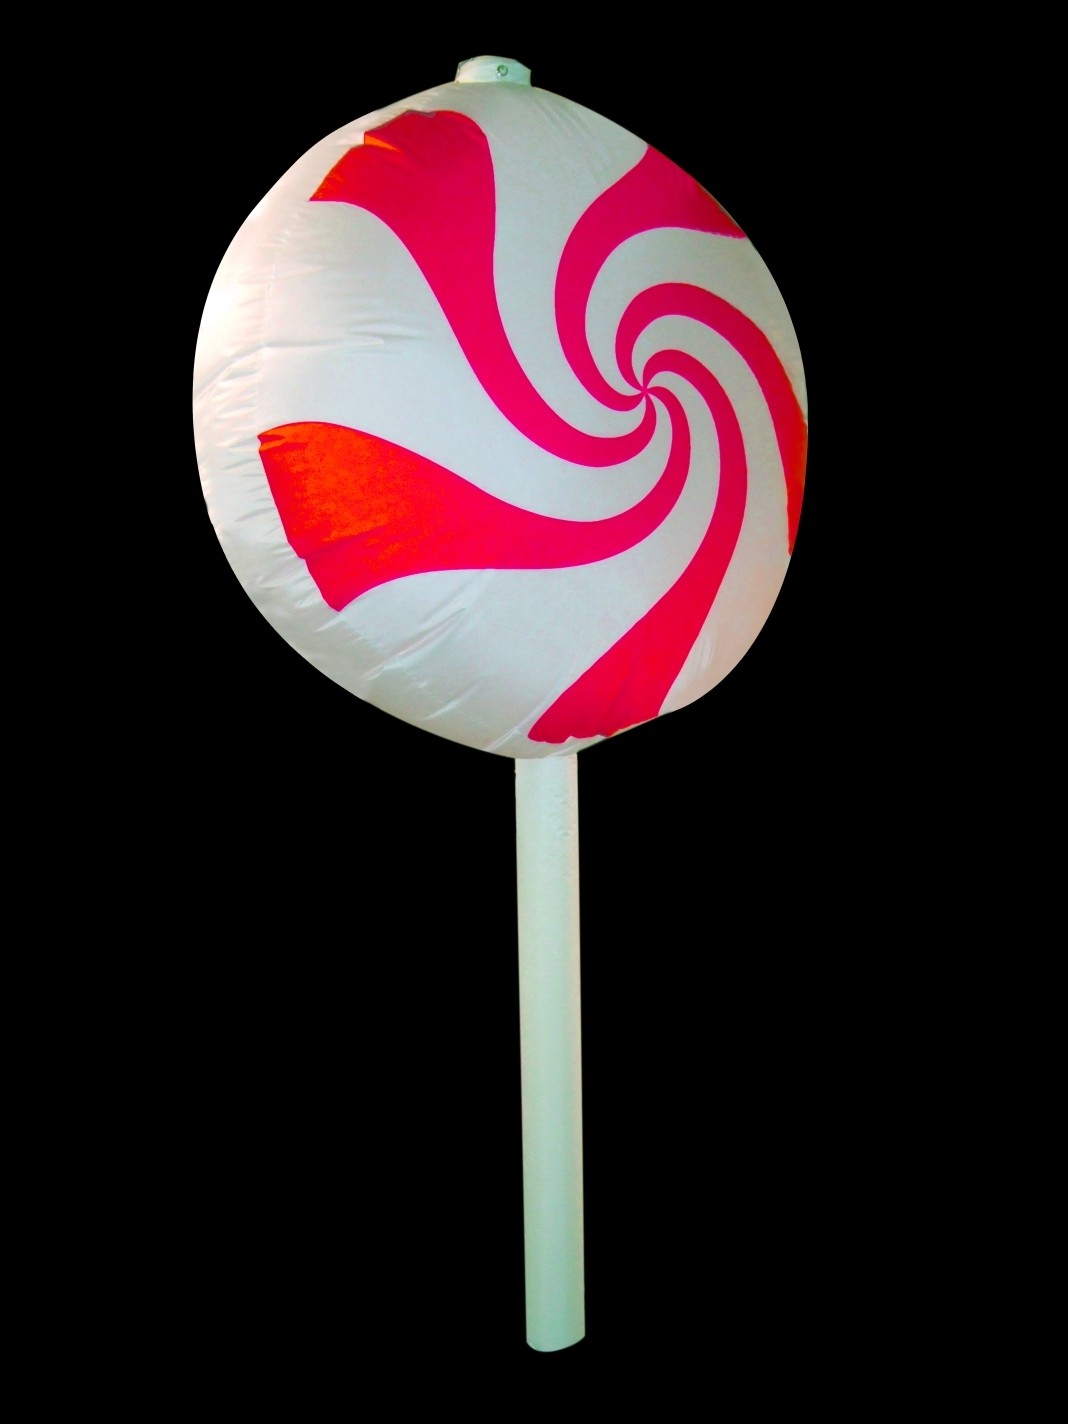 Hanging Inflatable Lollipop 3ft/91cm x 6ft/182cm